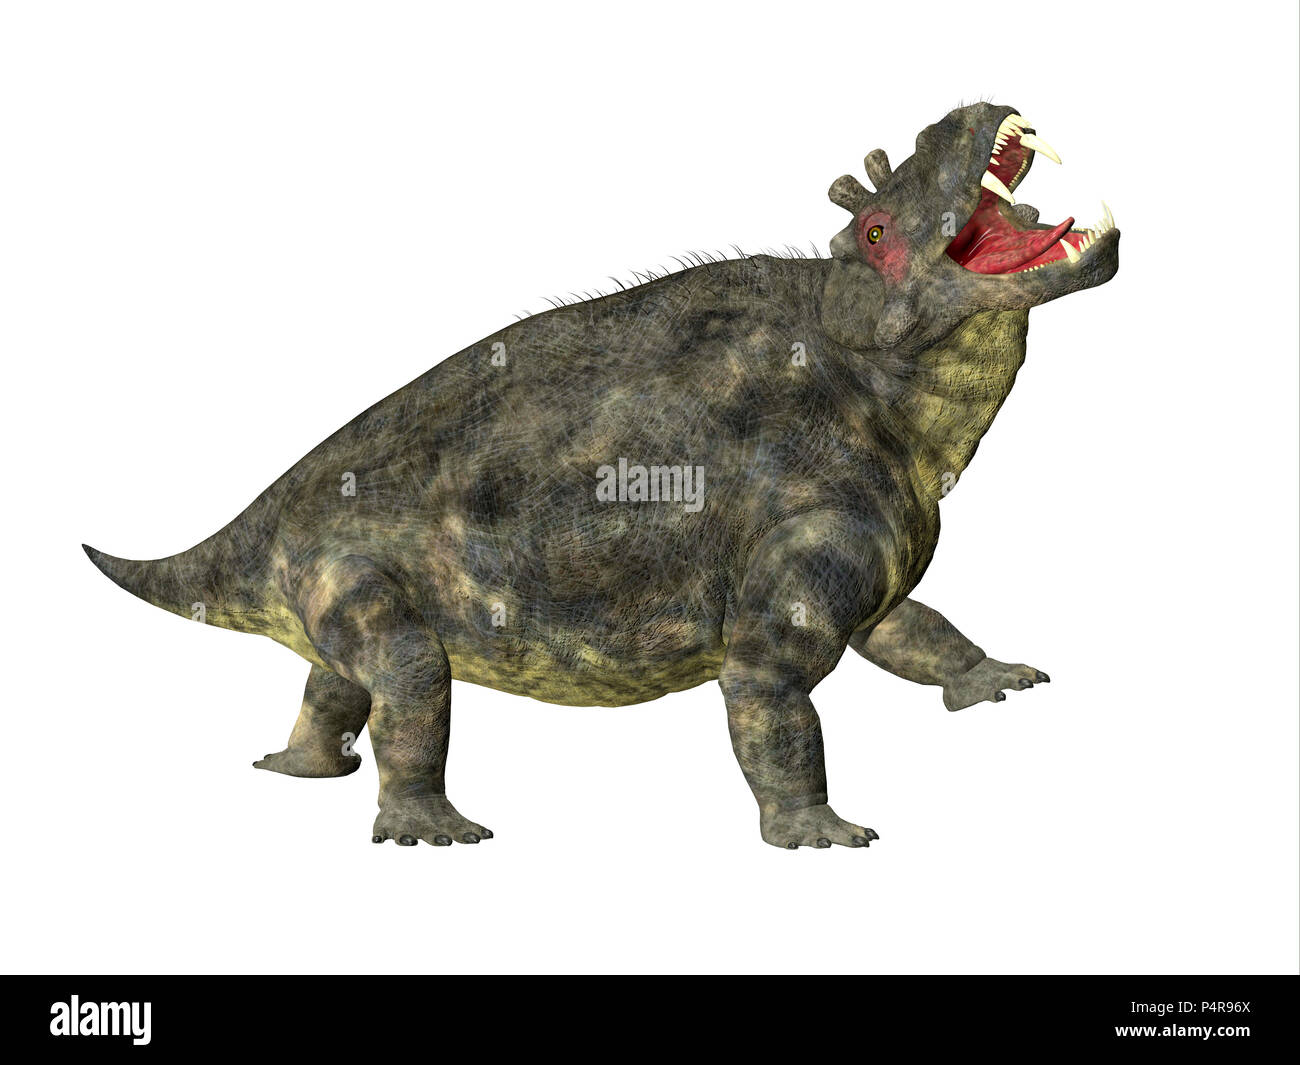 Estemmenosuchus uralensis Dinosaurier Seite Profil - Estemmenosuchus uralensis war ein Allesfresser therapsid Dinosaurier in der Permian Periode lebte. Stockfoto